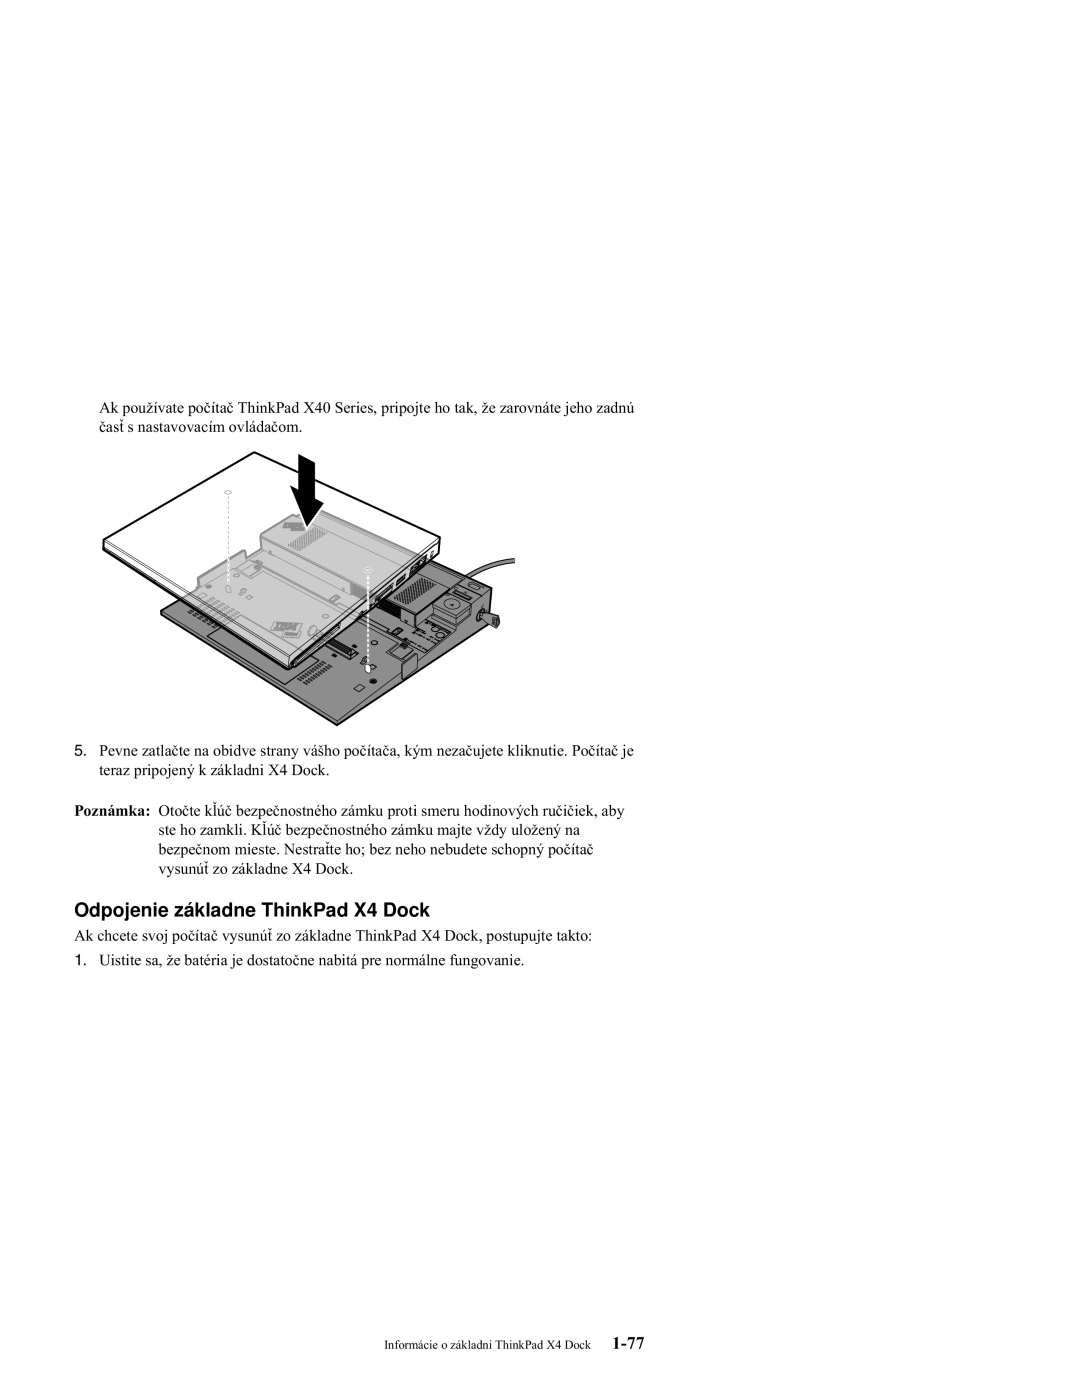 IBM manual Odpojenie základne ThinkPad X4 Dock 